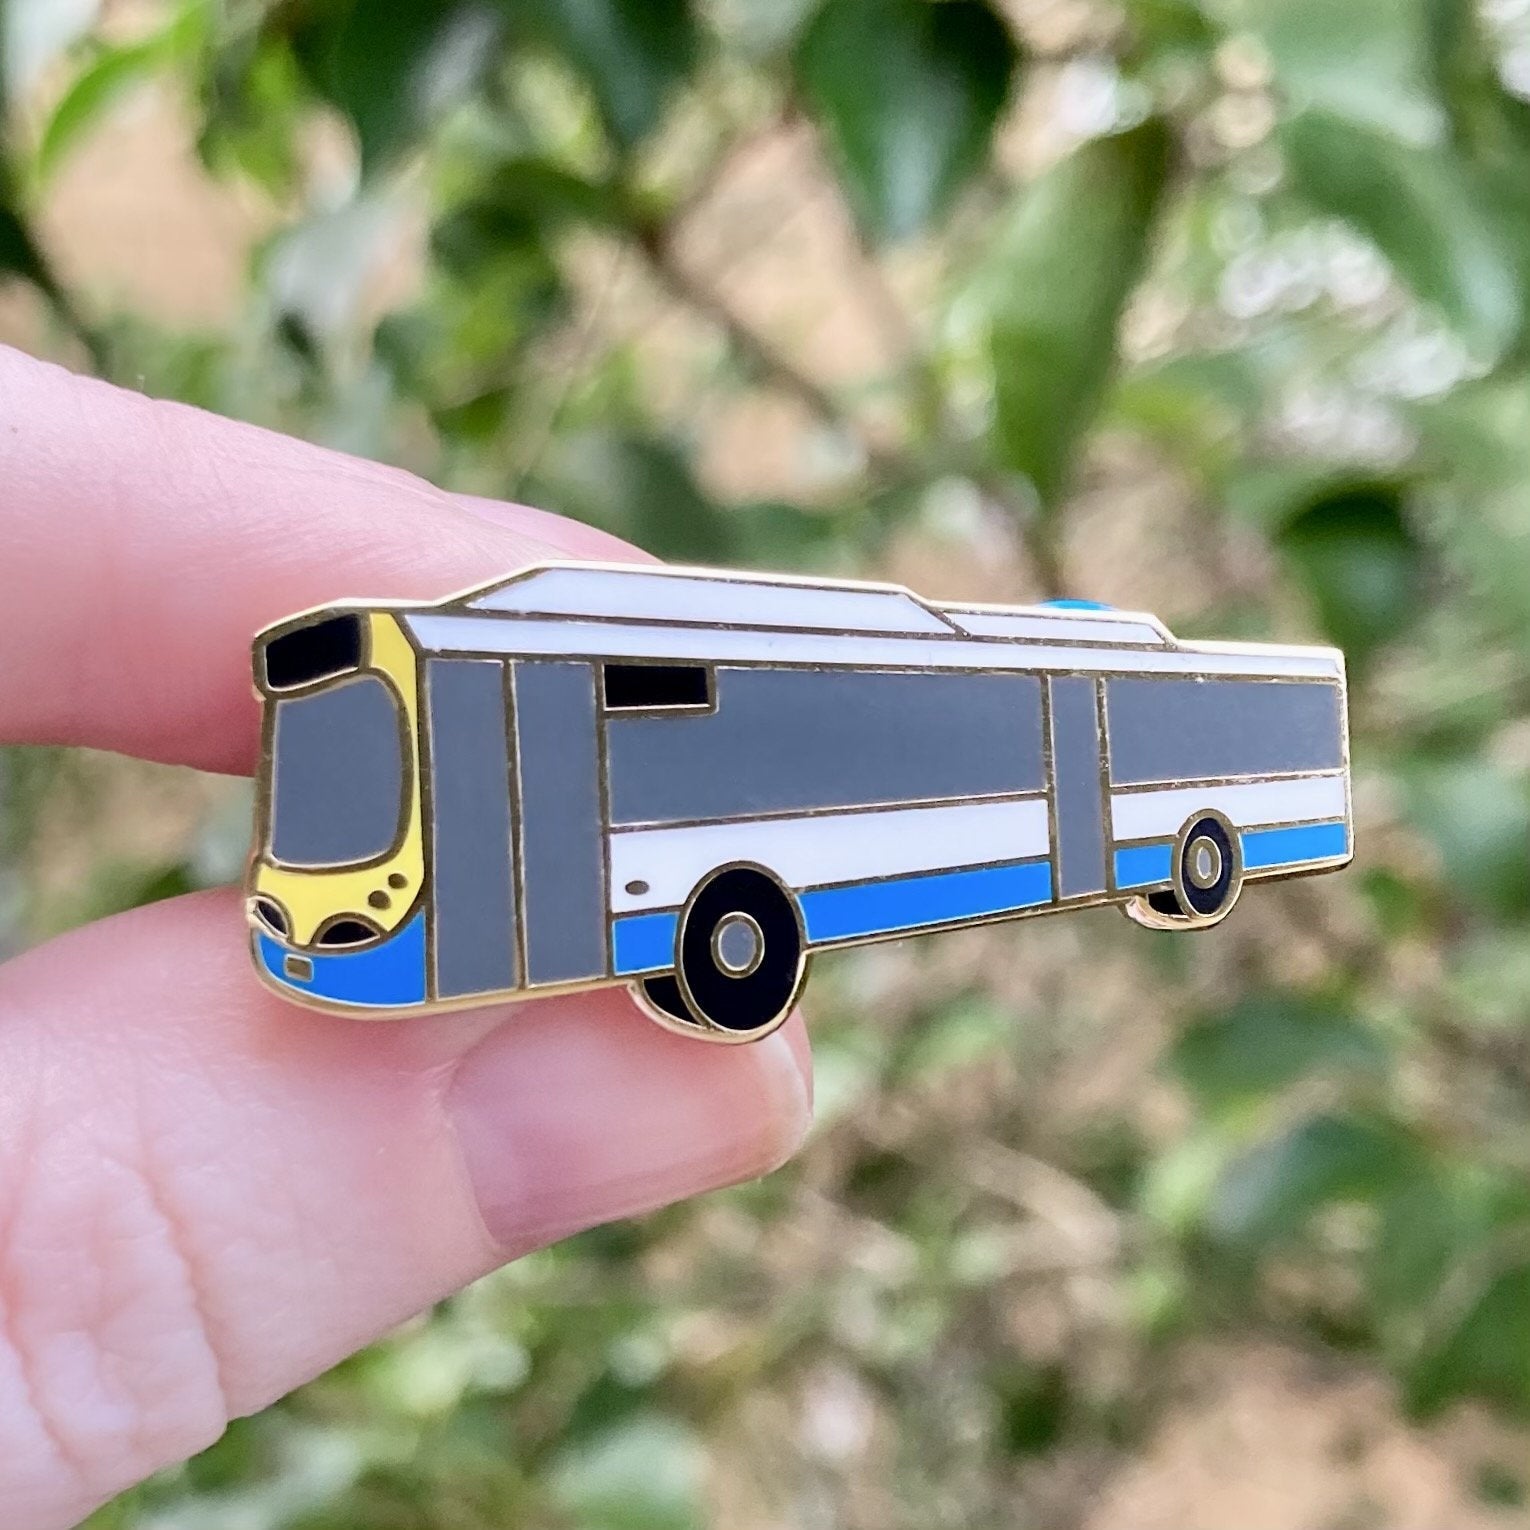 Brisbane Bus - Hard Enamel Pin - 40mm wide, Gold Plating - Public Transport Fan